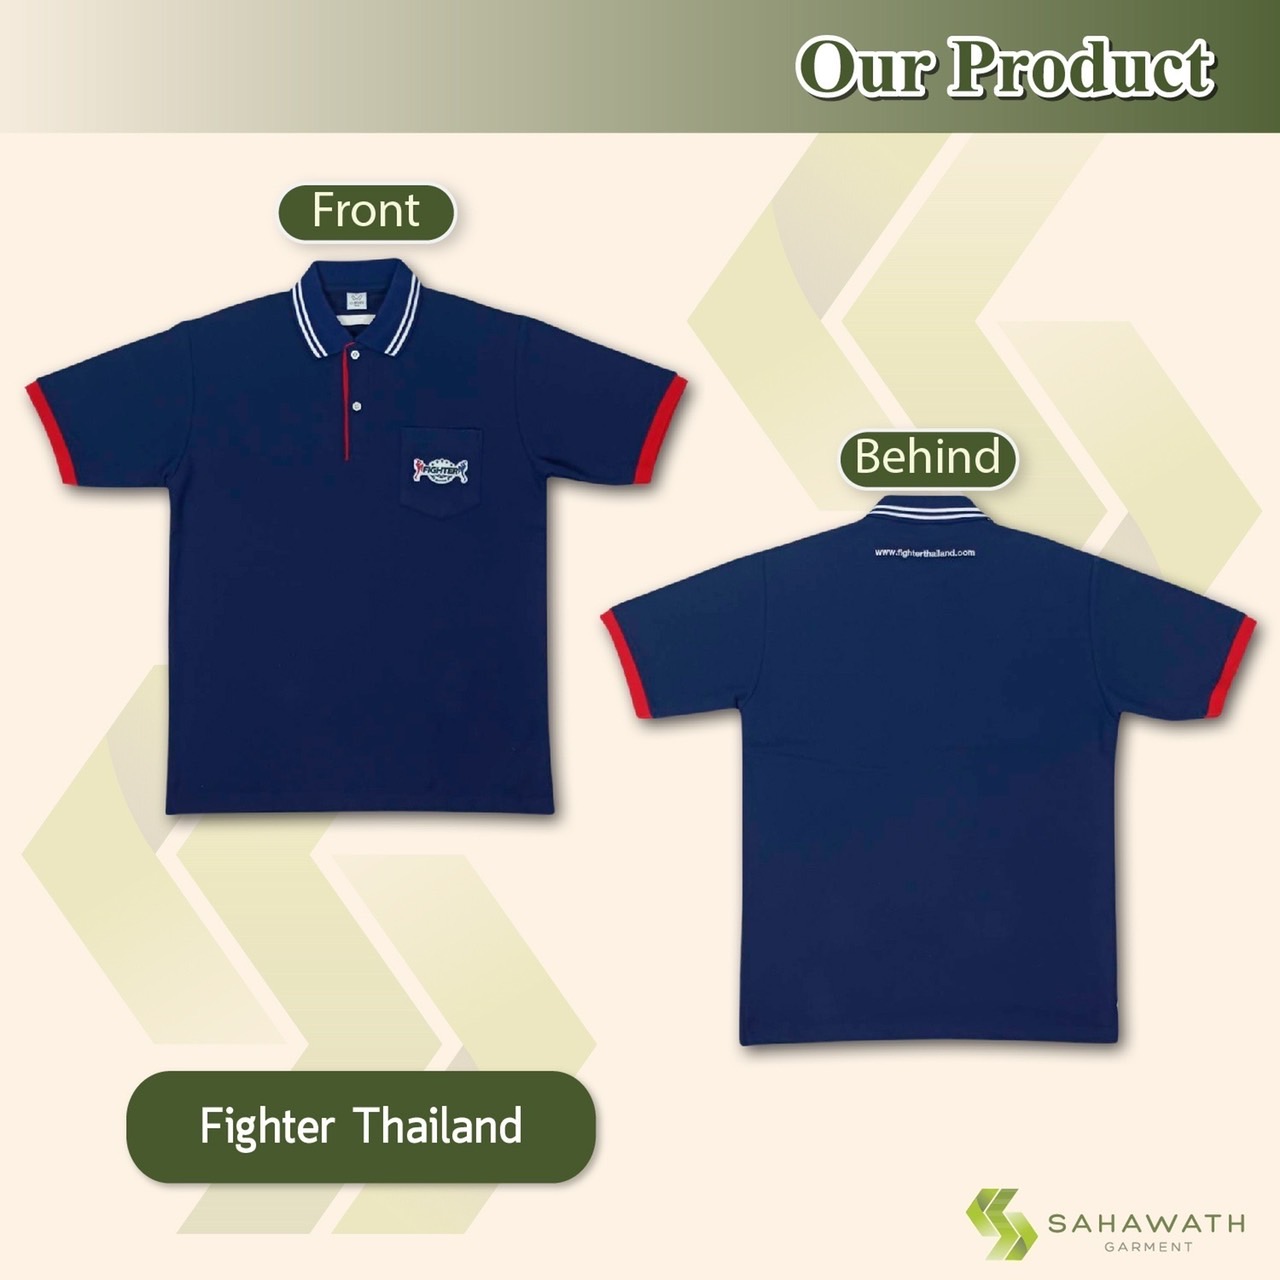 Fighter Thailand